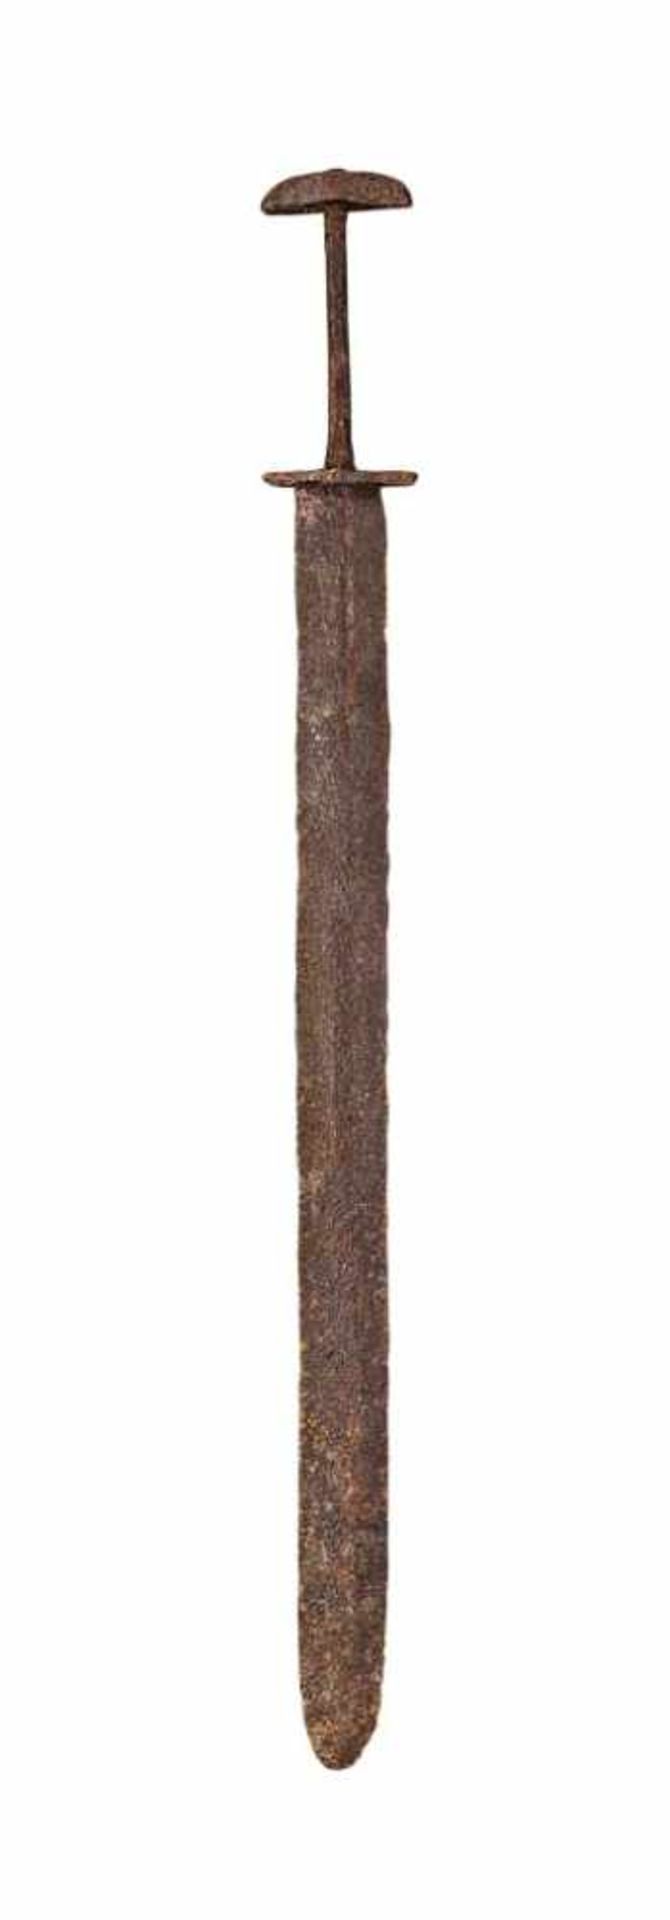 Merowinger-Schwert mit breiter zweischneidiger Klinge, im oberen Viertel schwache Kehlung. Kurzes